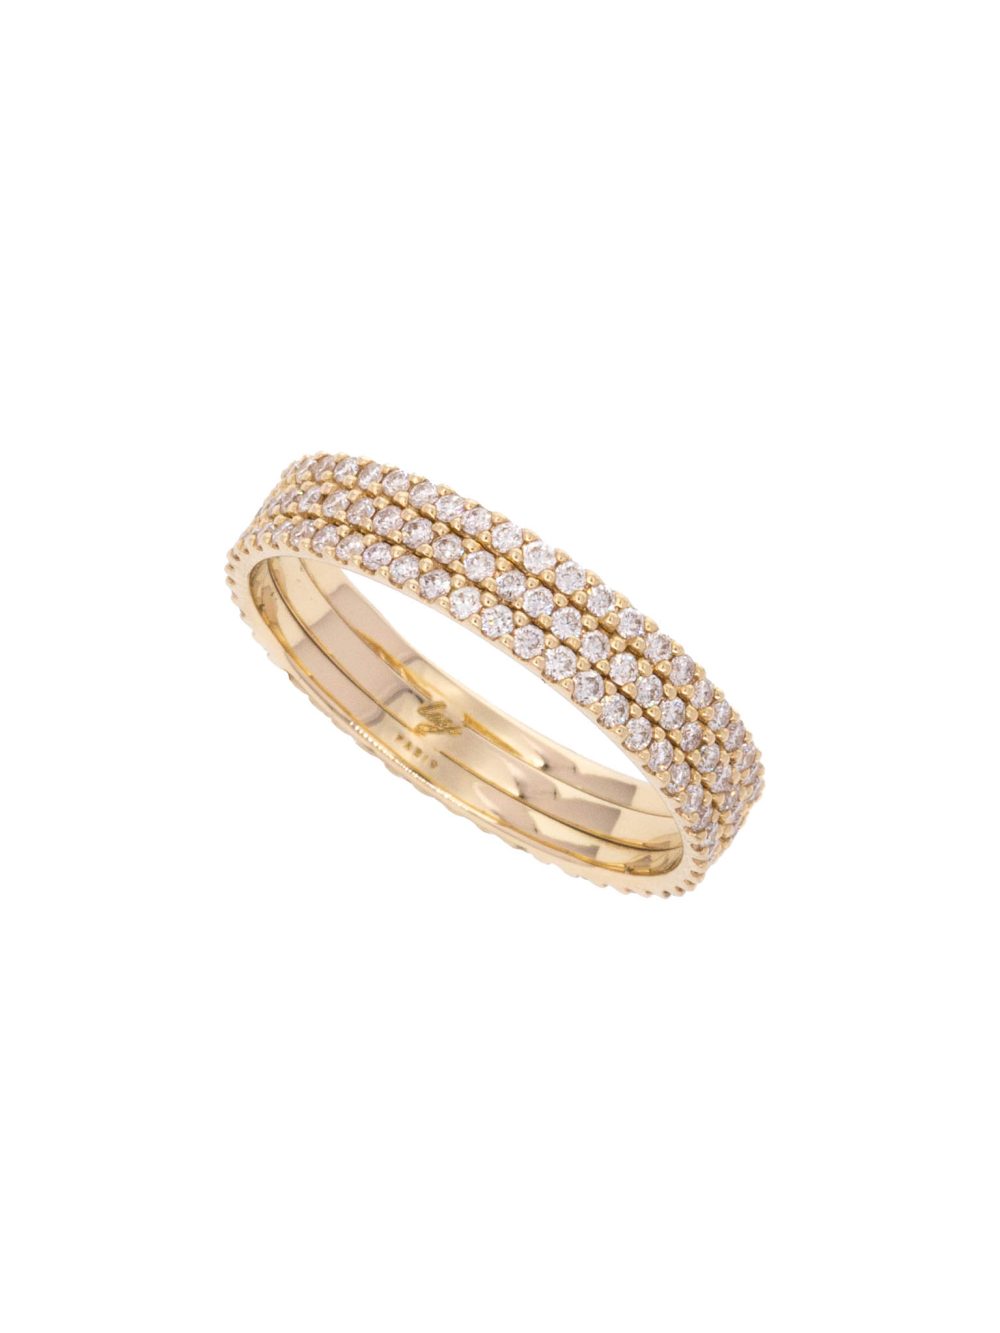 ring-diamonds-thelma-luj-paris-jewellery-